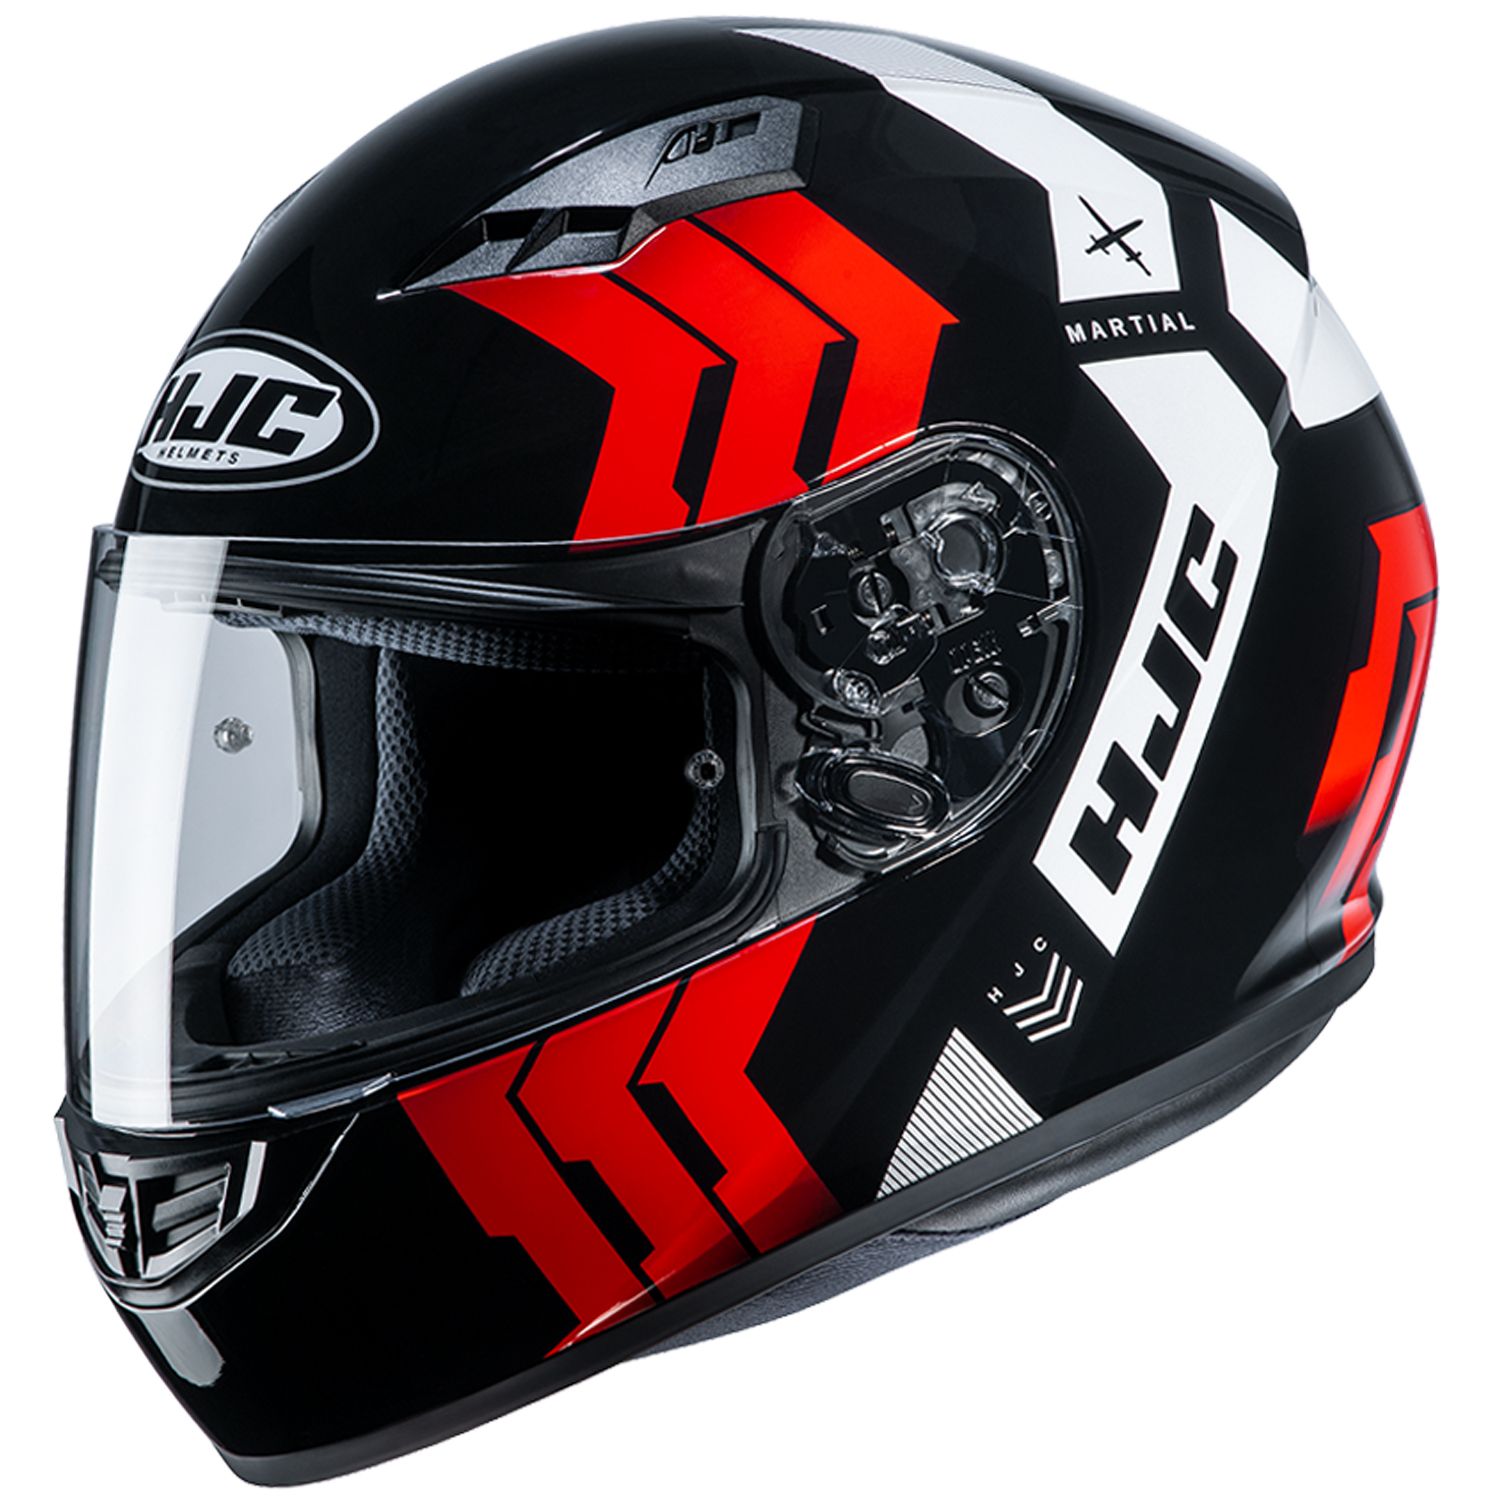 RSタイチ HJH212 CS-15 マーシャル フルフェイスヘルメット ブラック/レッド Mサイズ ヘルメット ツーリング 通勤通学 HJH212BK11M